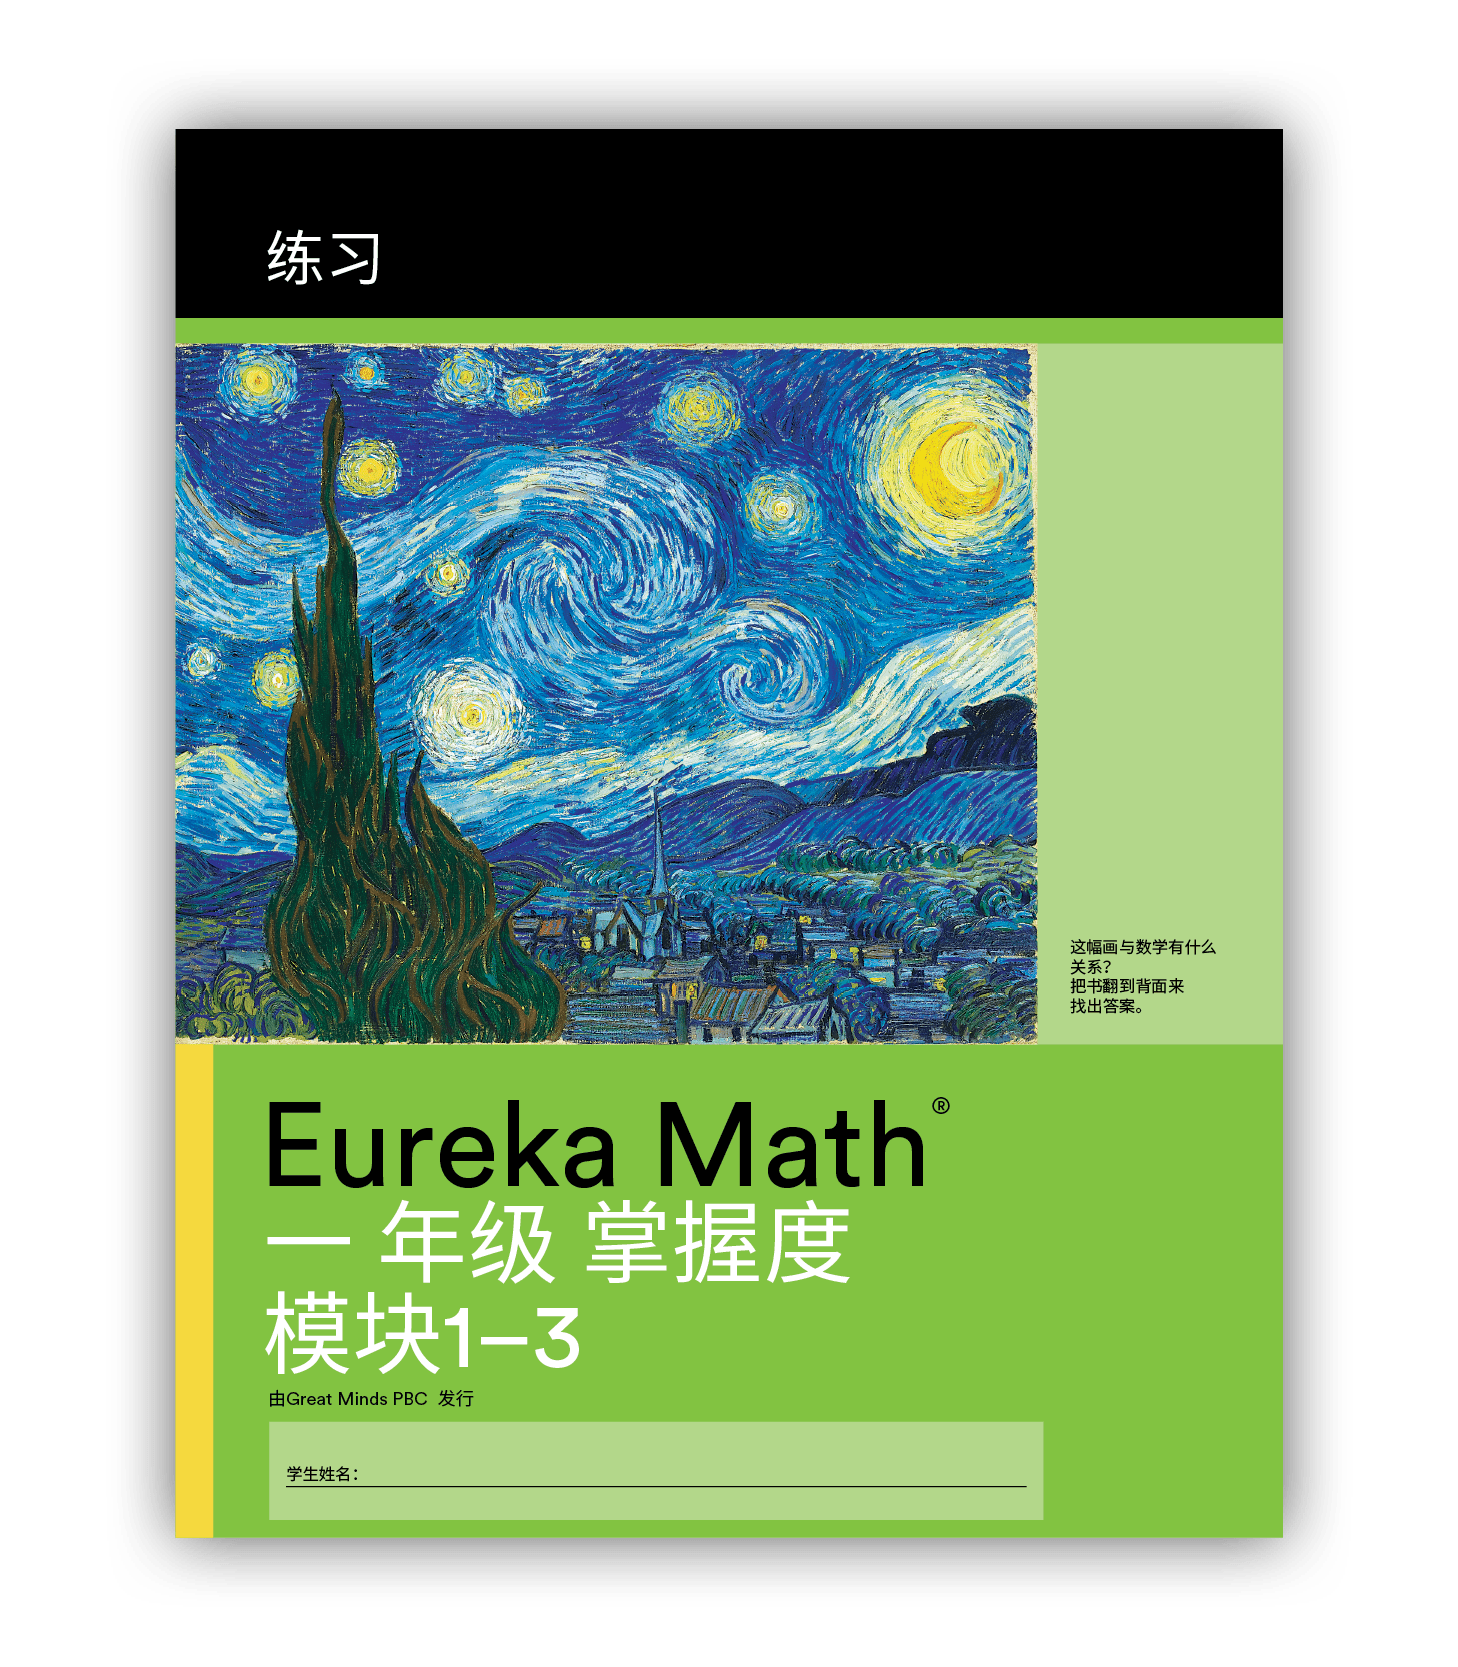 Eureka Math Practice Book in Mandarin for Grade 1